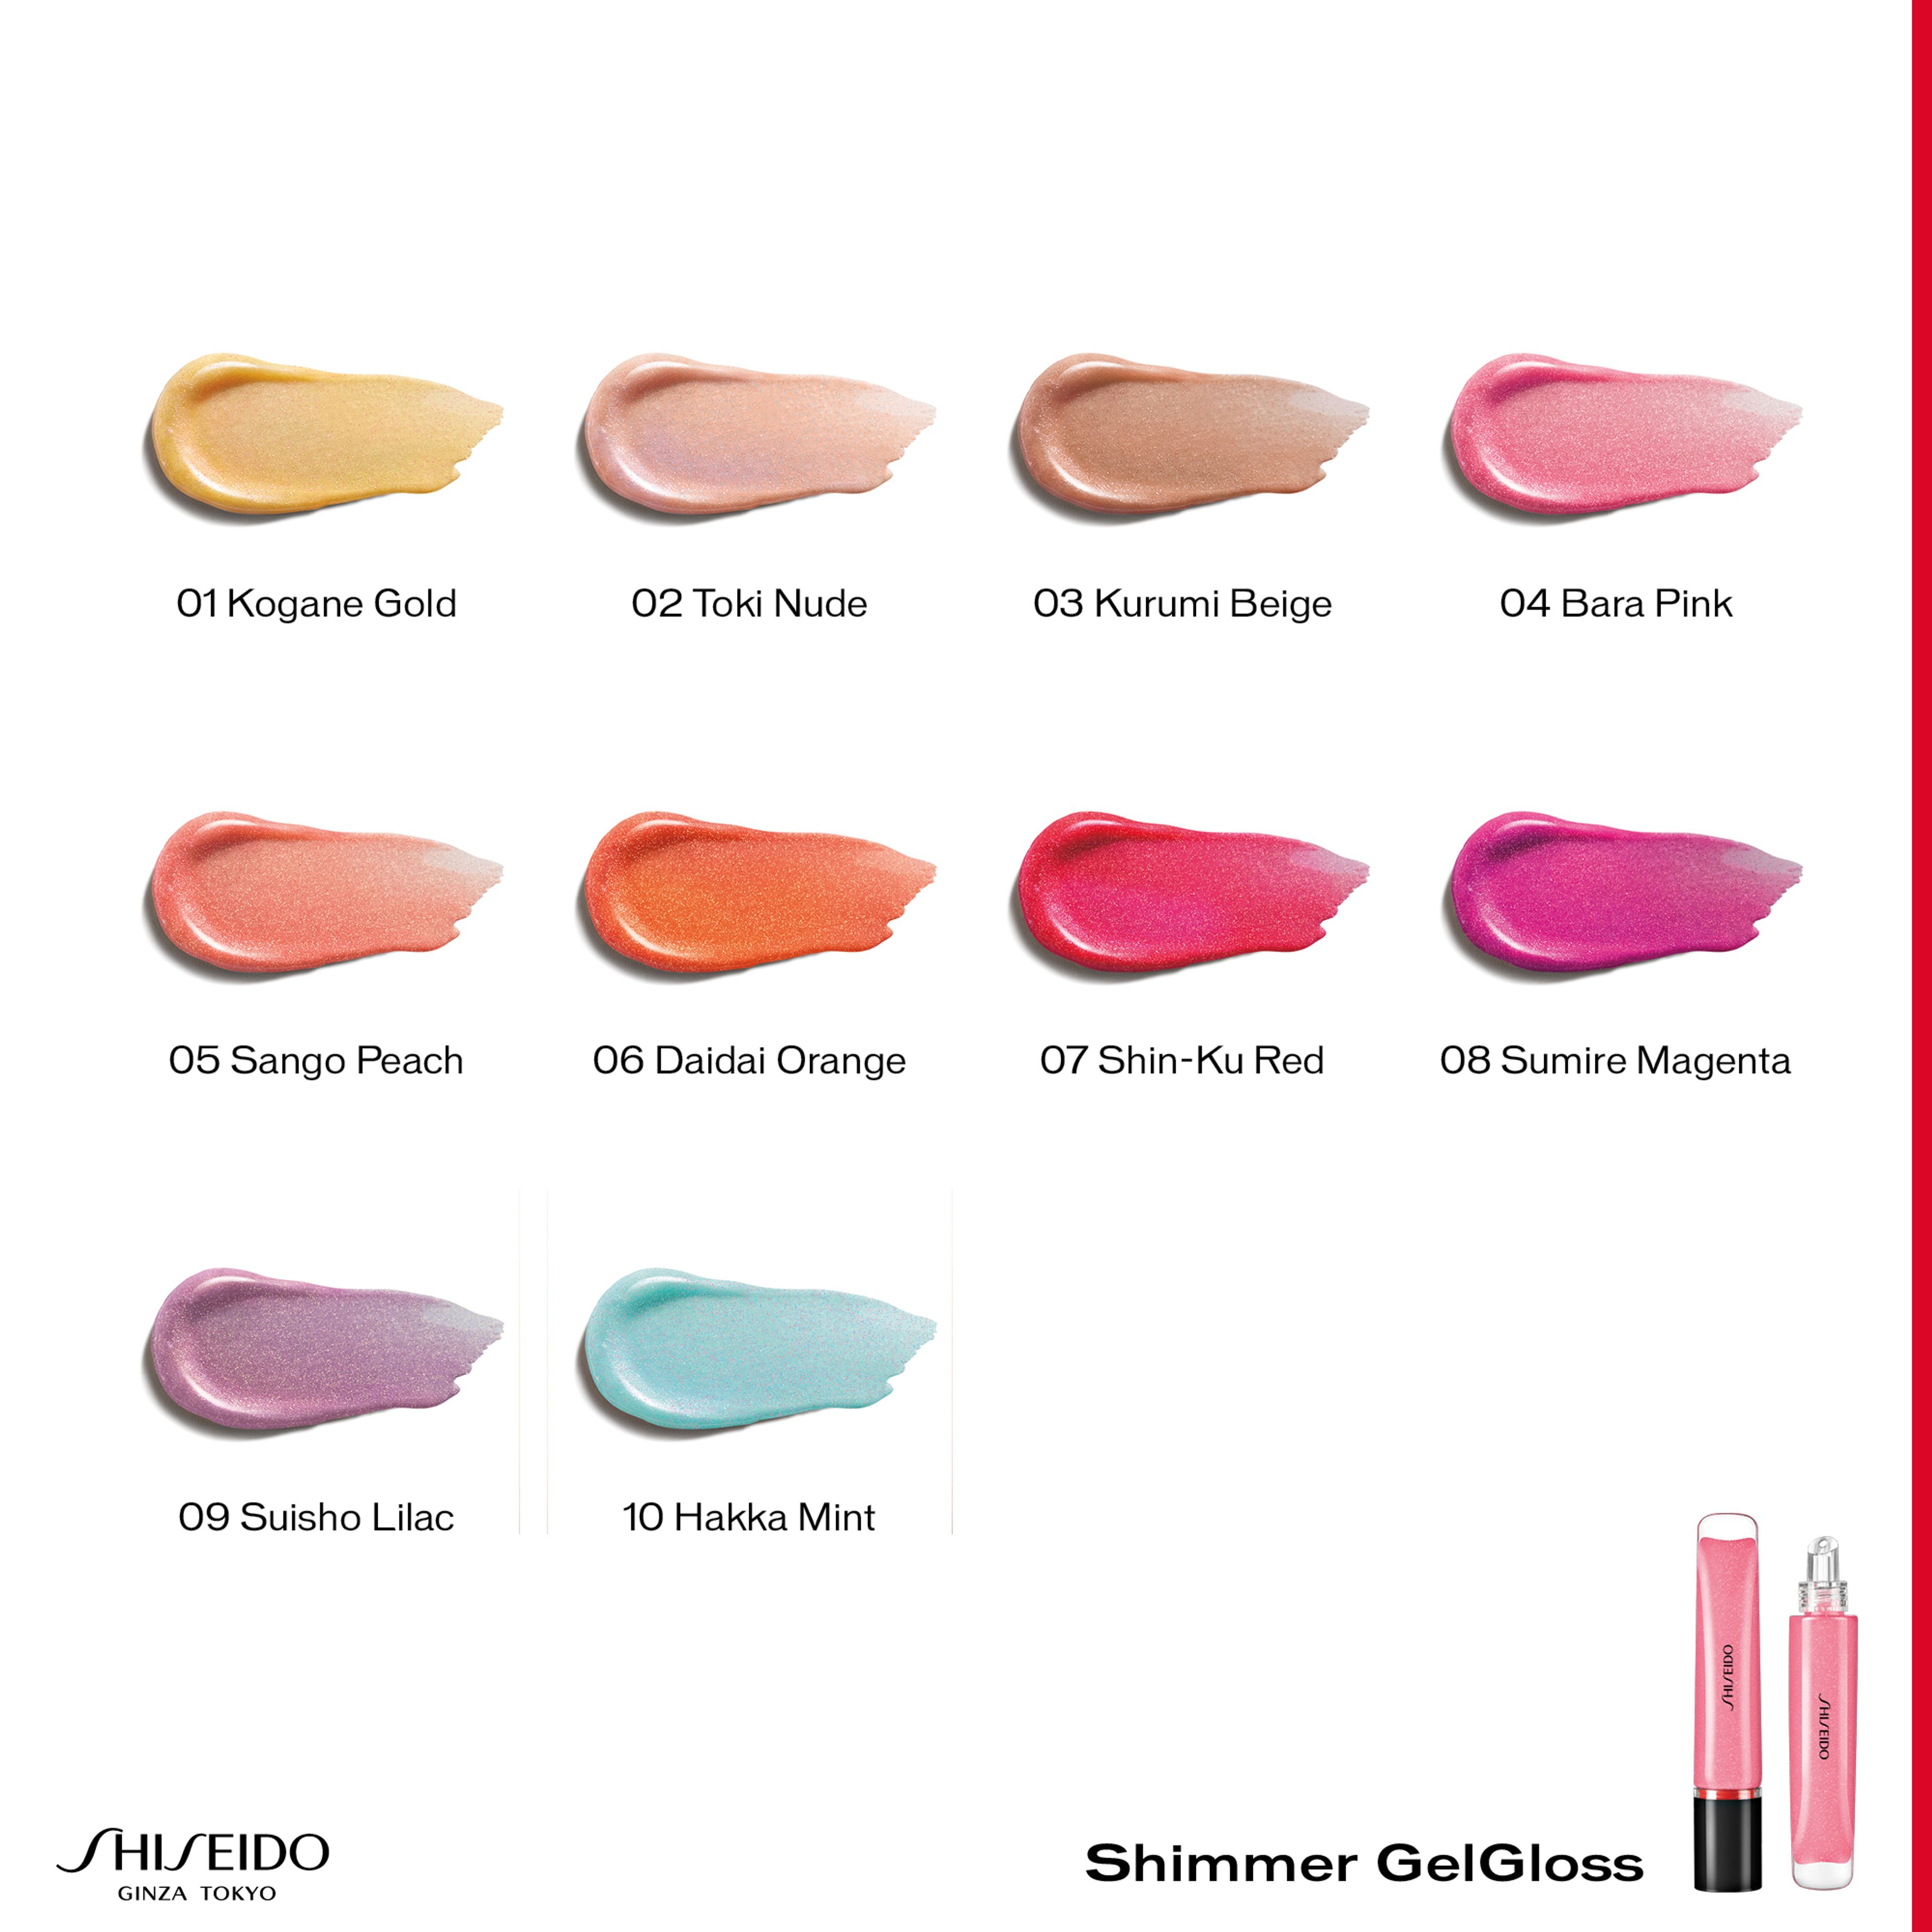 Shimmer Gelgloss Shiseido 2